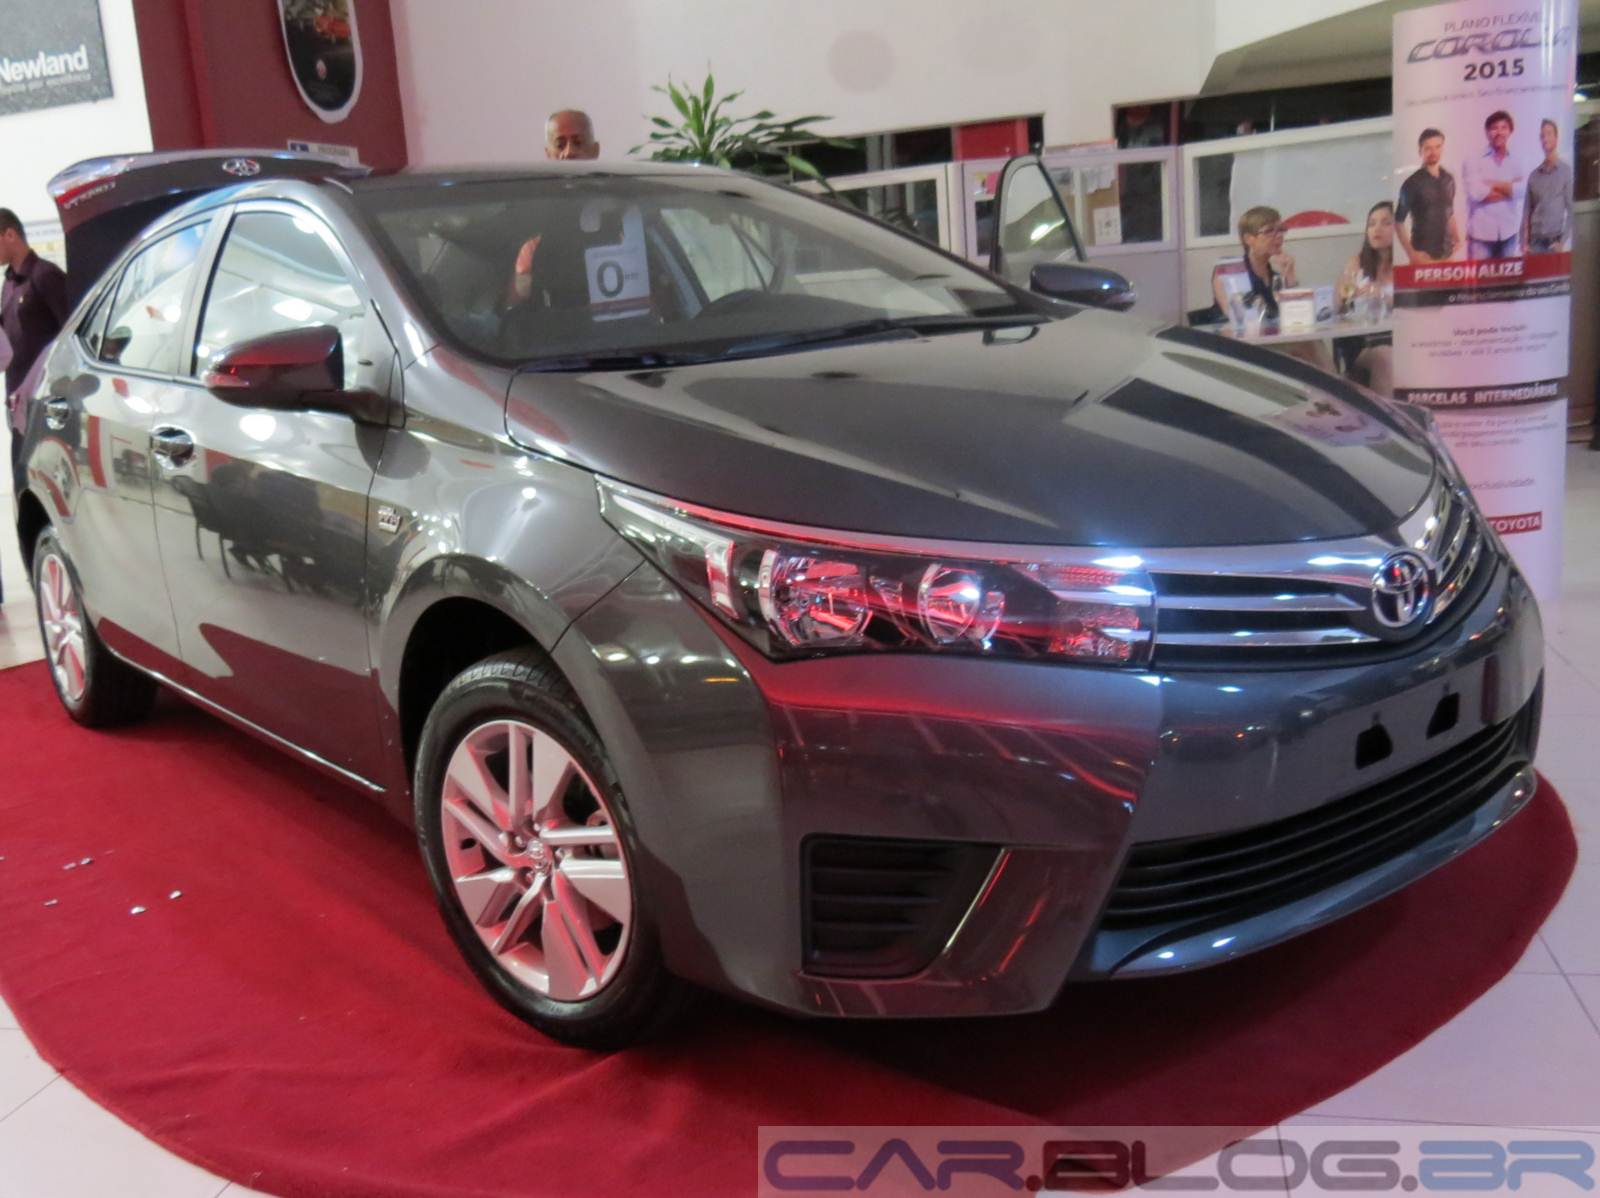 Toyota Corolla 2015 Gli